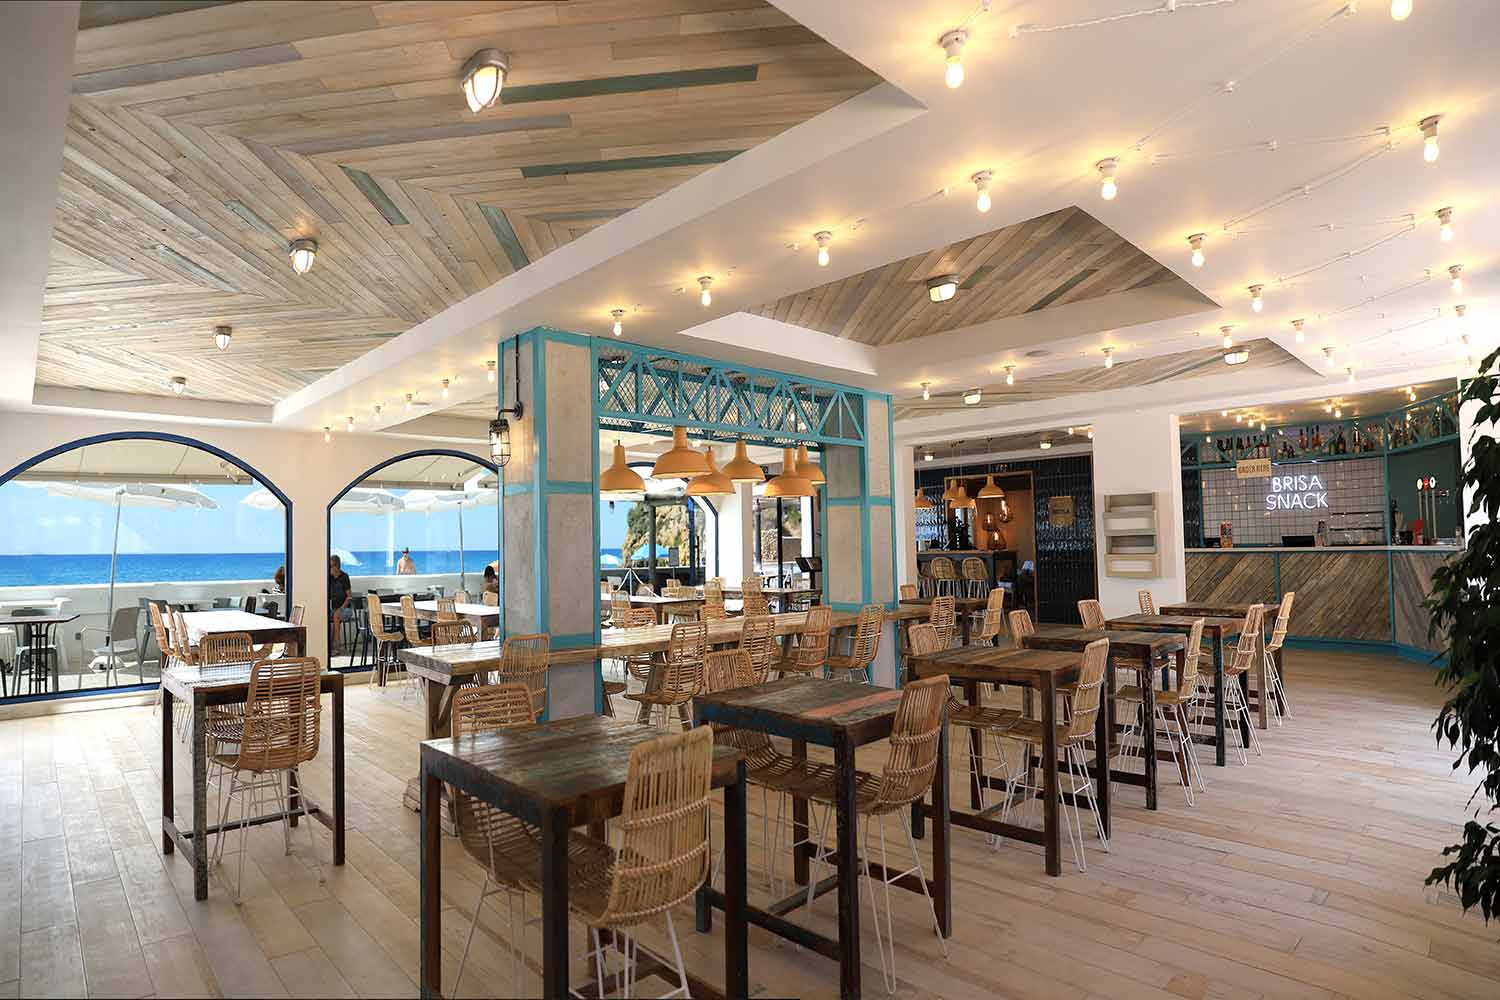 Restaurant interior design projects... Mediterranean decor.